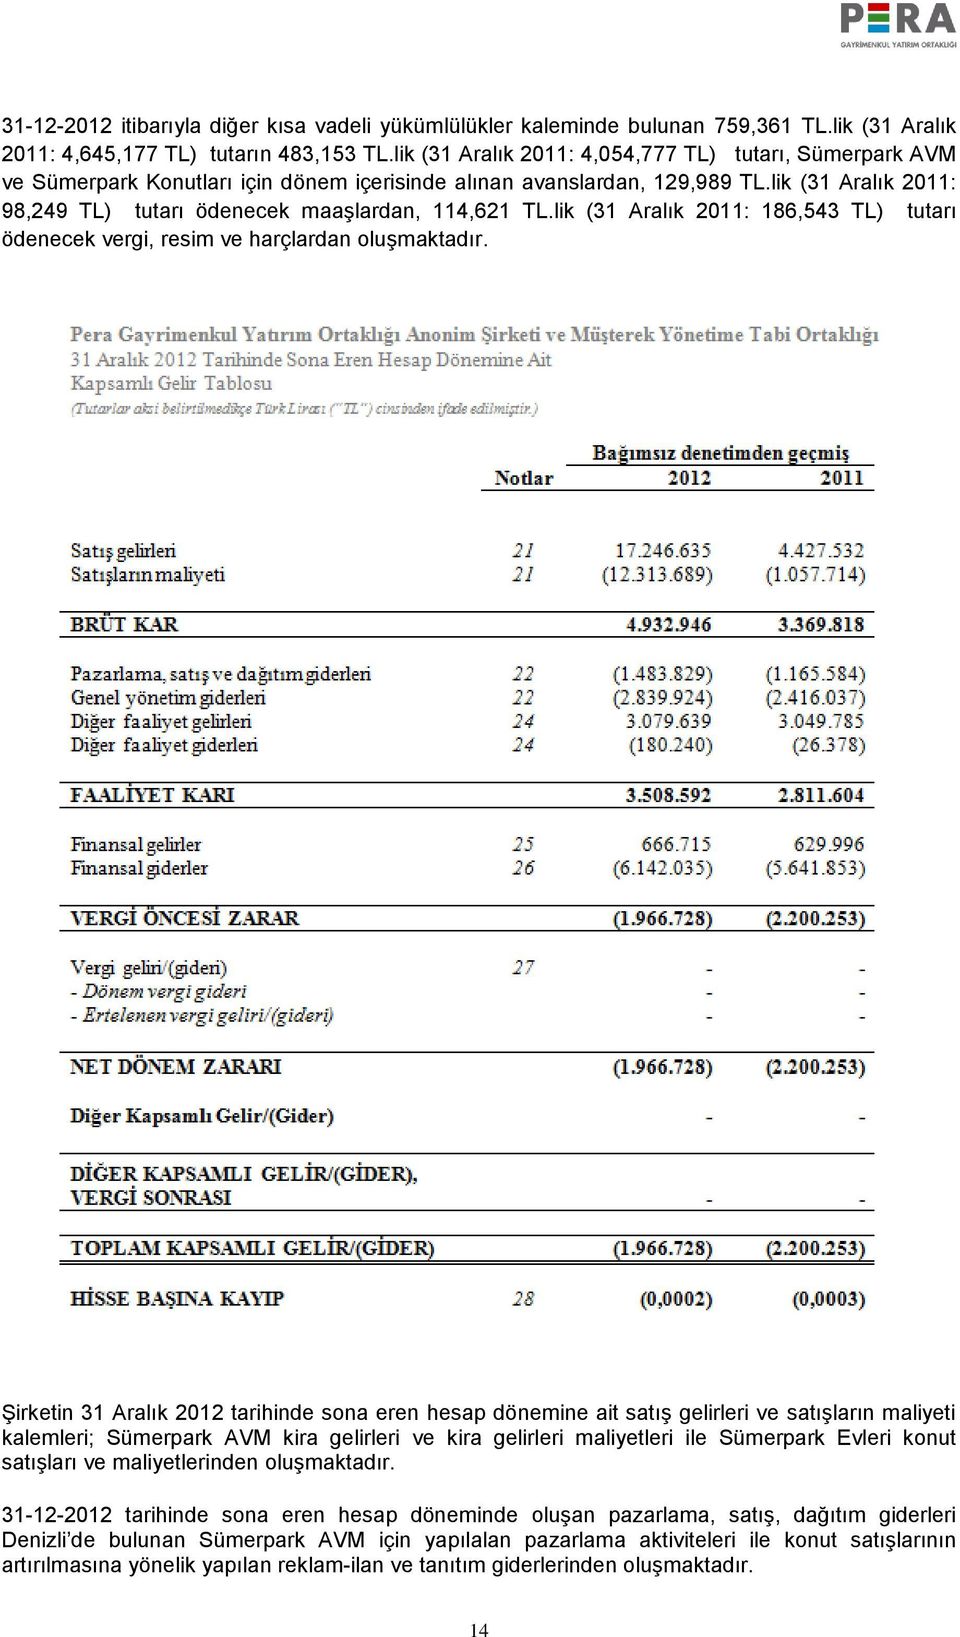 lik (31 Aralık 2011: 98,249 TL) tutarı ödenecek maaşlardan, 114,621 TL.lik (31 Aralık 2011: 186,543 TL) tutarı ödenecek vergi, resim ve harçlardan oluşmaktadır.